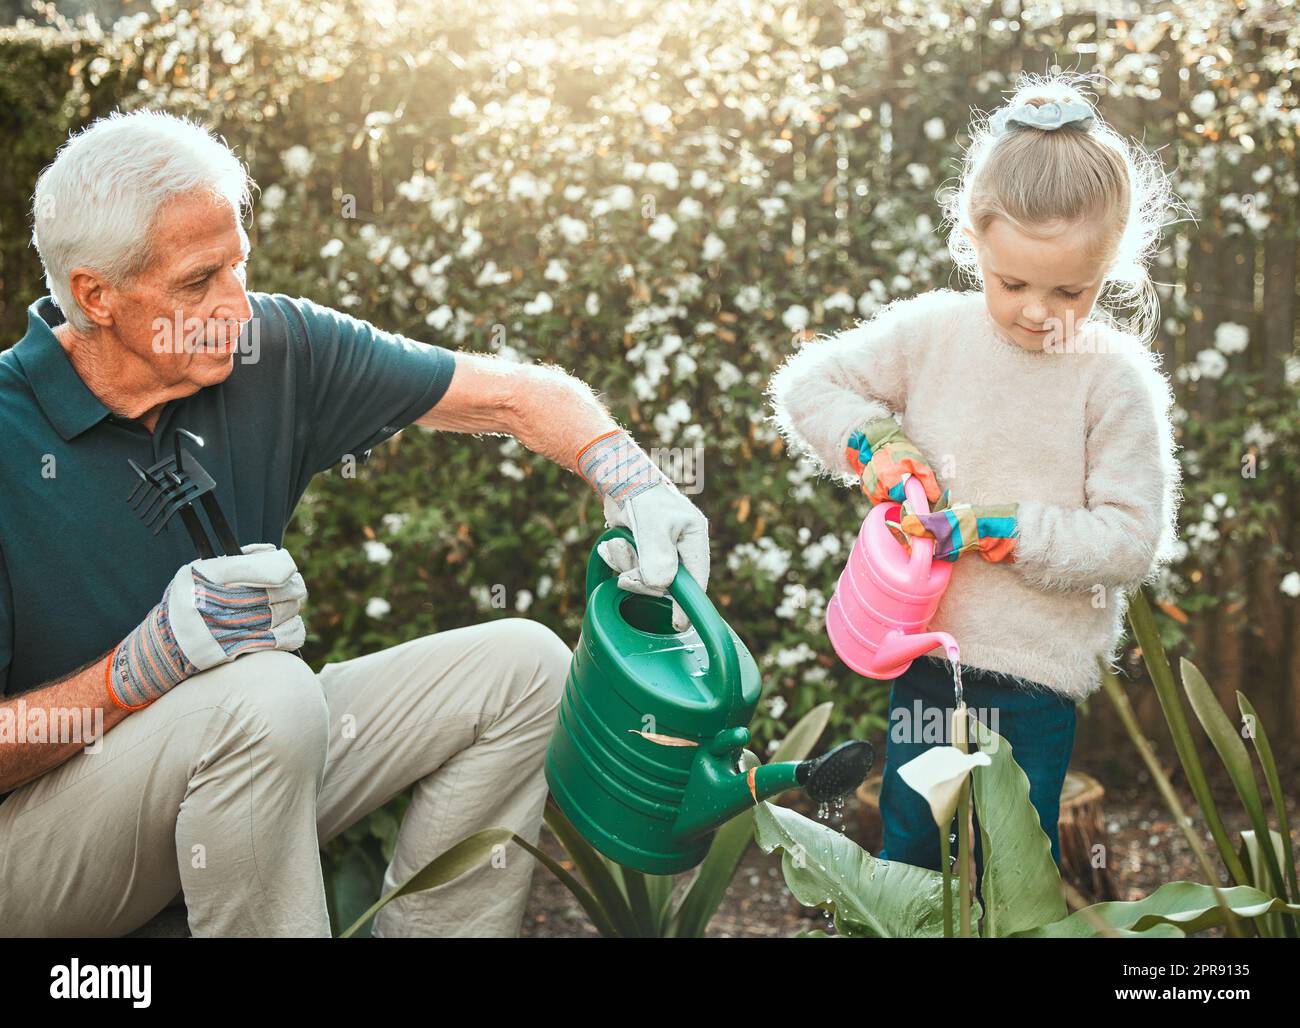 Une société se développe quand les vieux hommes plantent des arbres. Une adorable petite fille jardinant avec son grand-père. Banque D'Images